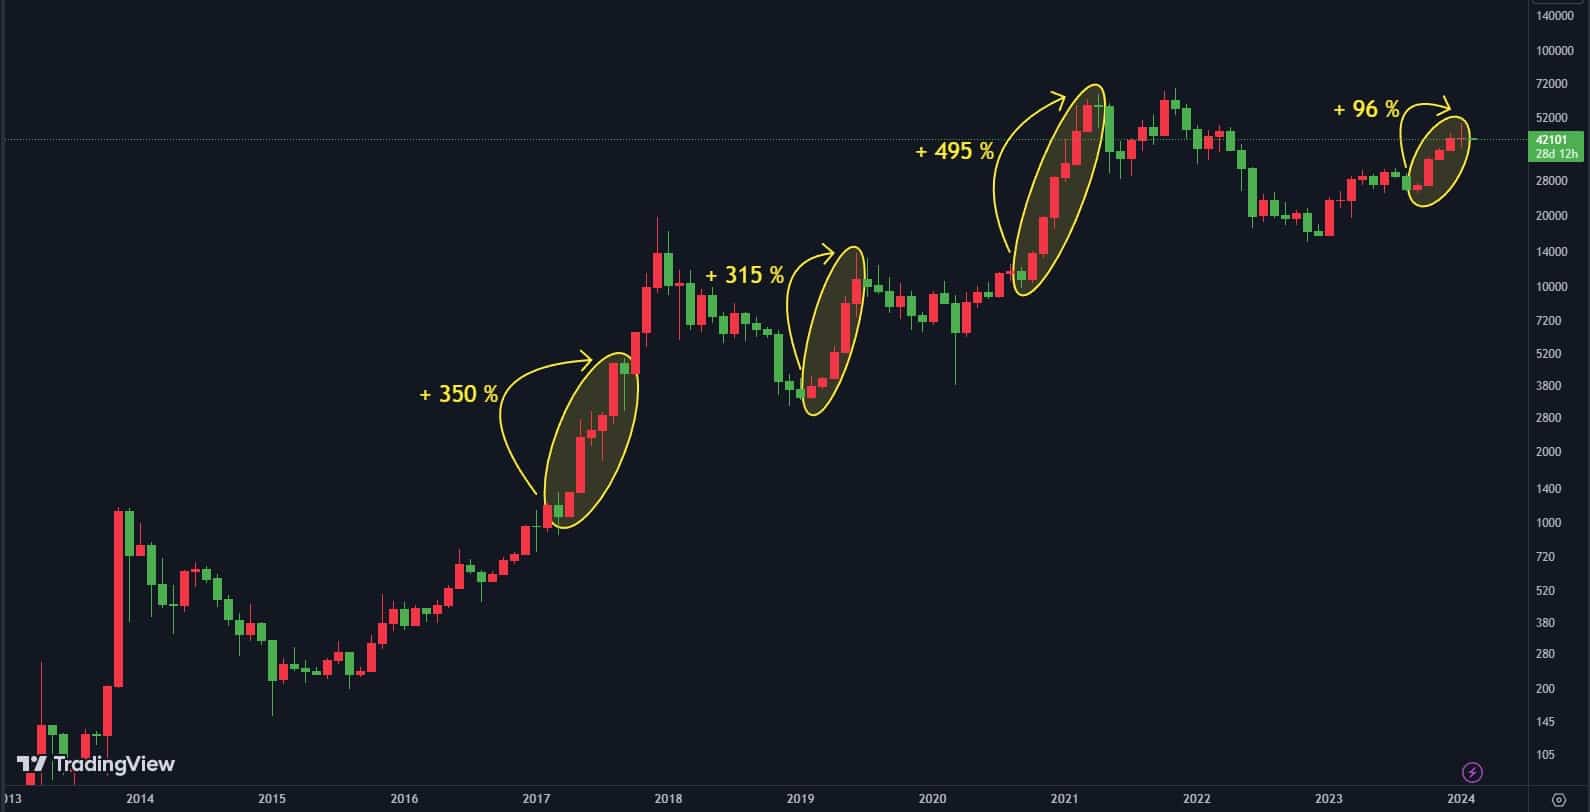 Cena bitcoinu vykazující období 5 po sobě jdoucích měsíců růstu